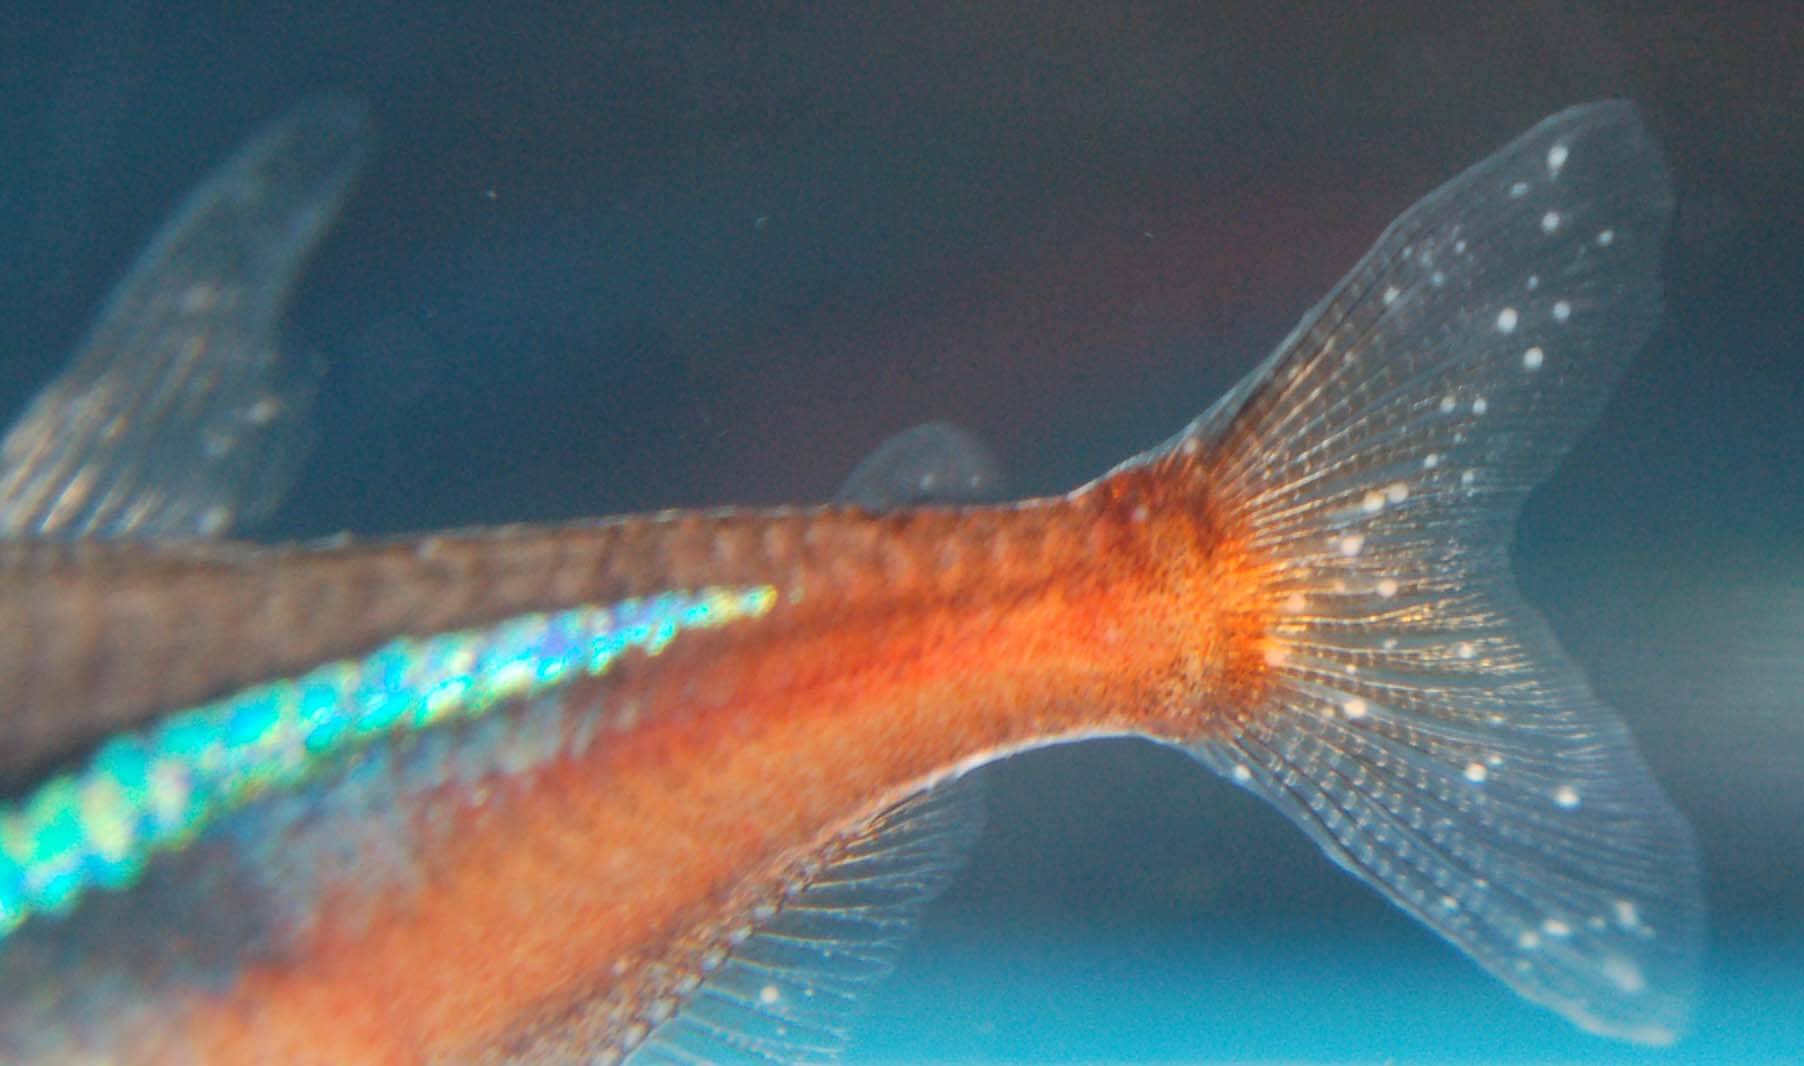 Манка у аквариумных рыб - заражение и симптомы, лечение ихтиофтириоза у рыб